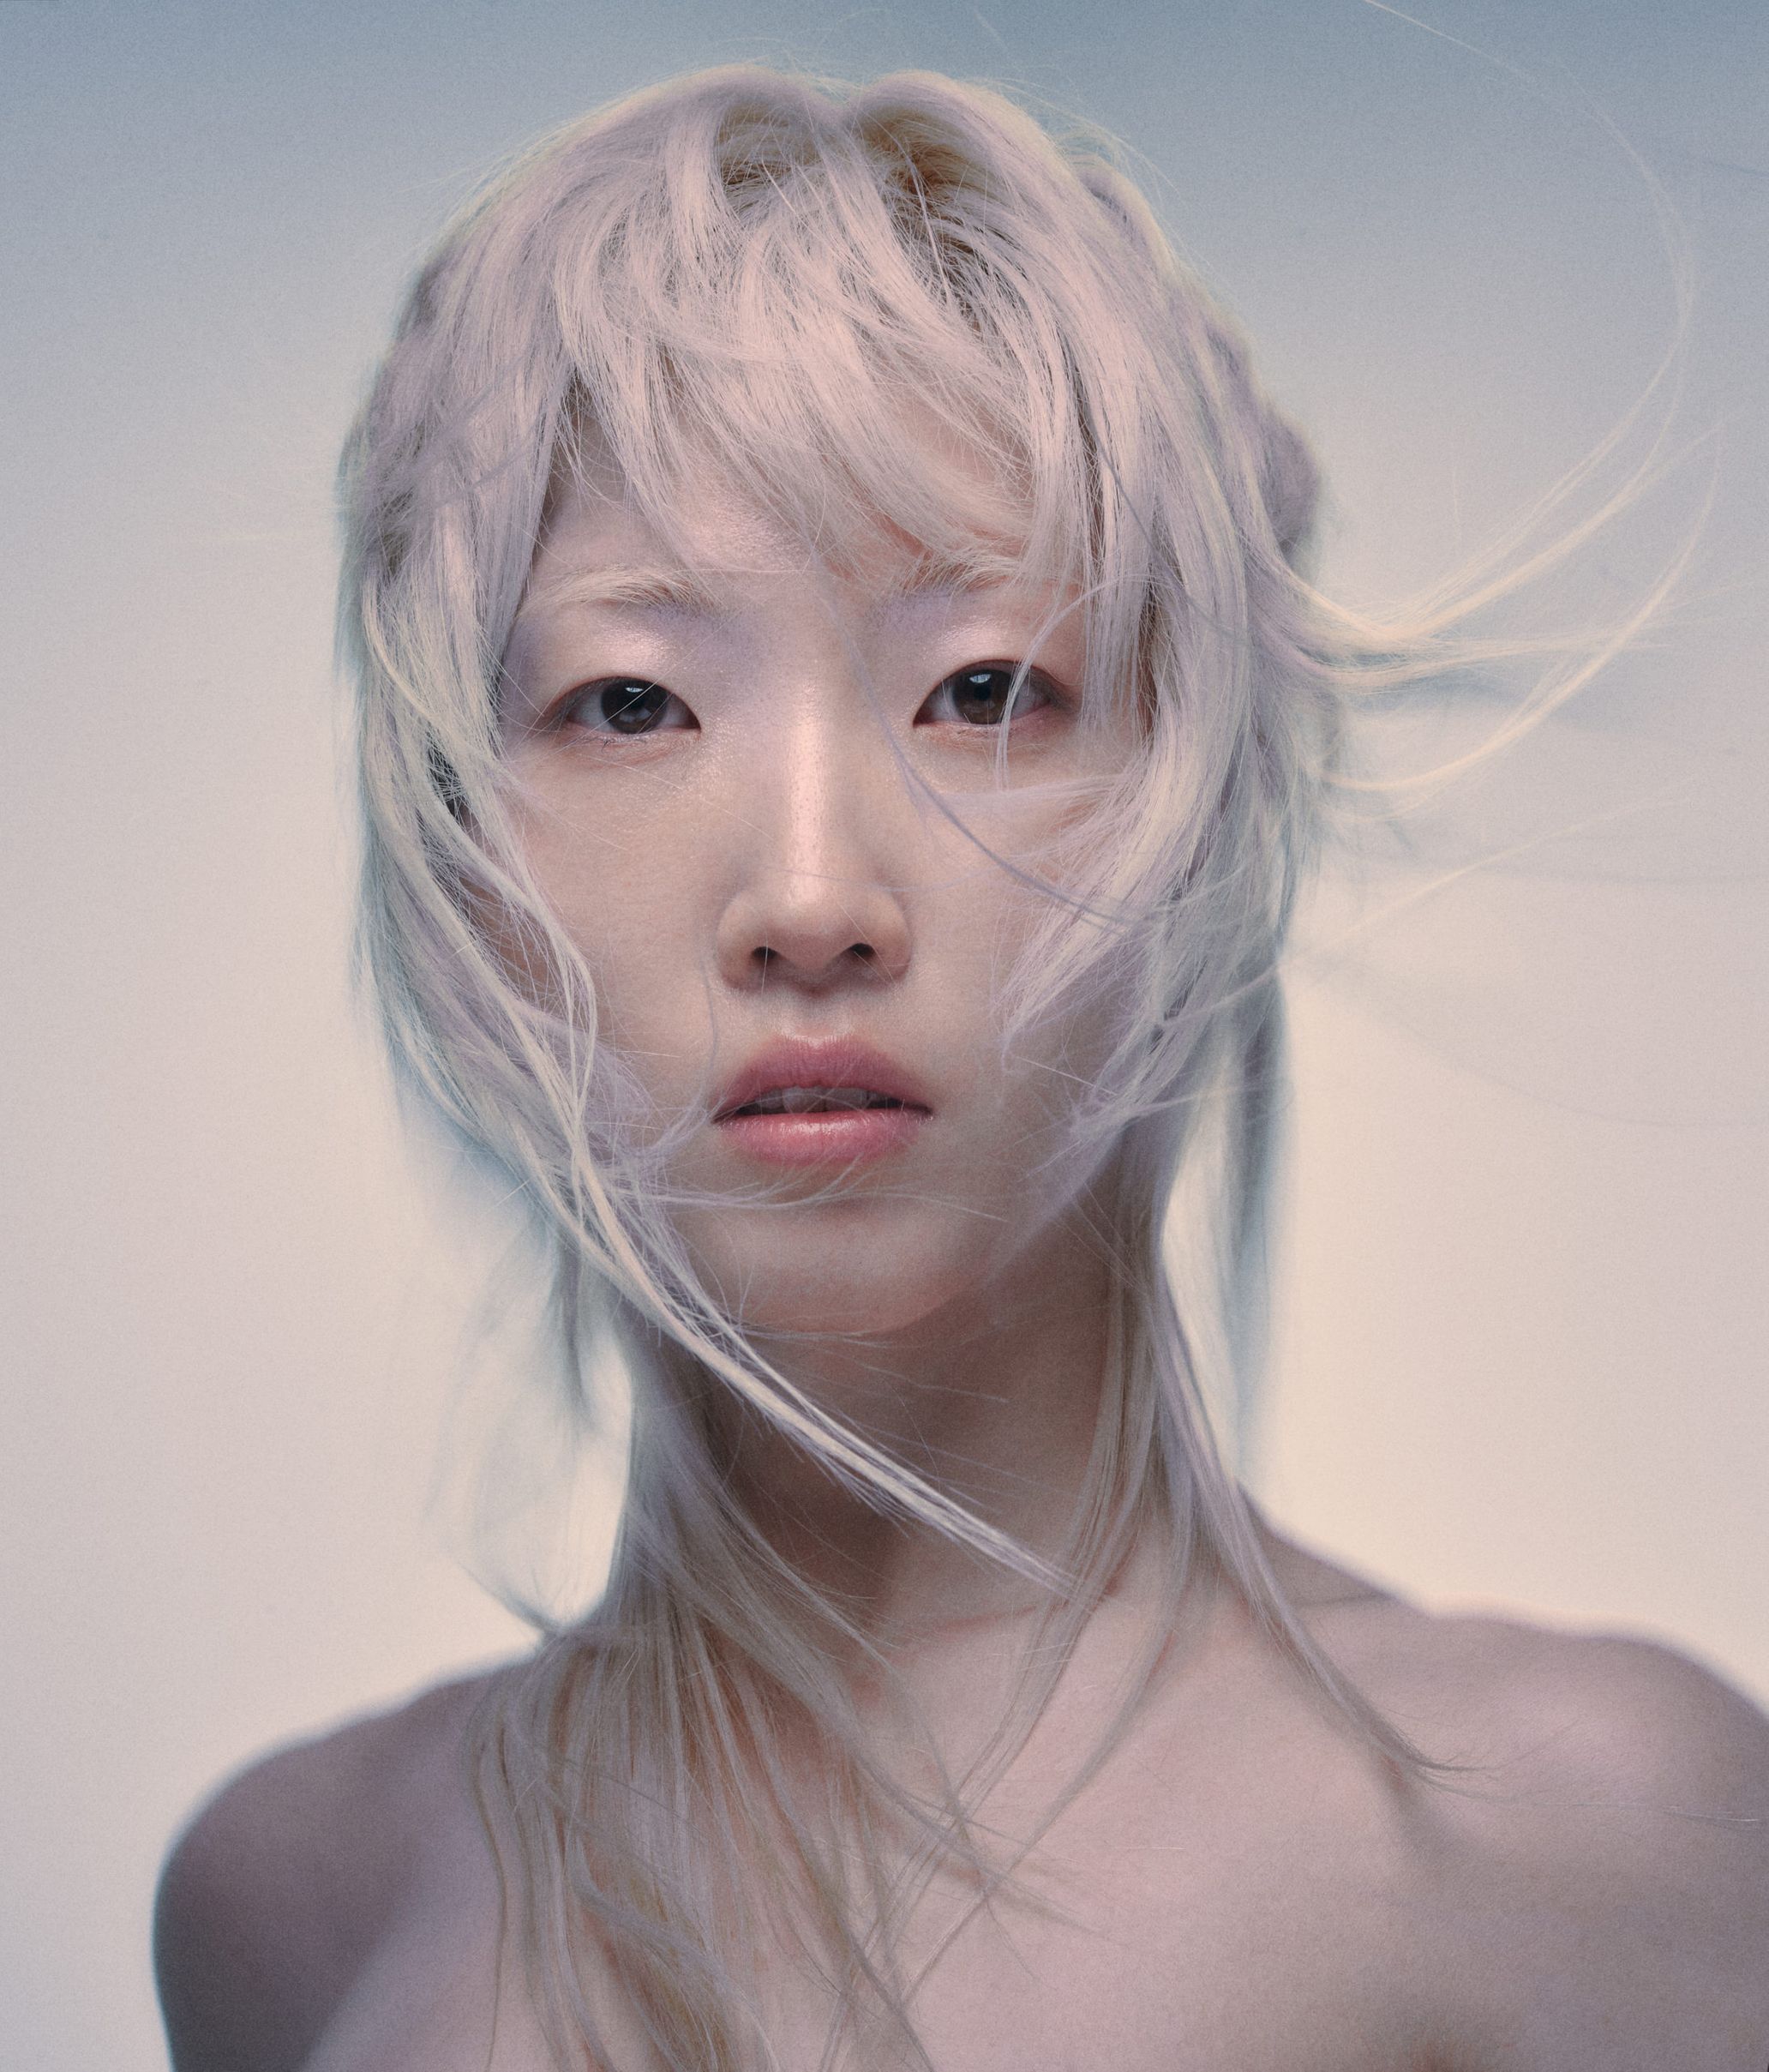 Korean-born LA-raised electronic artist CIFIKA released her 1st full